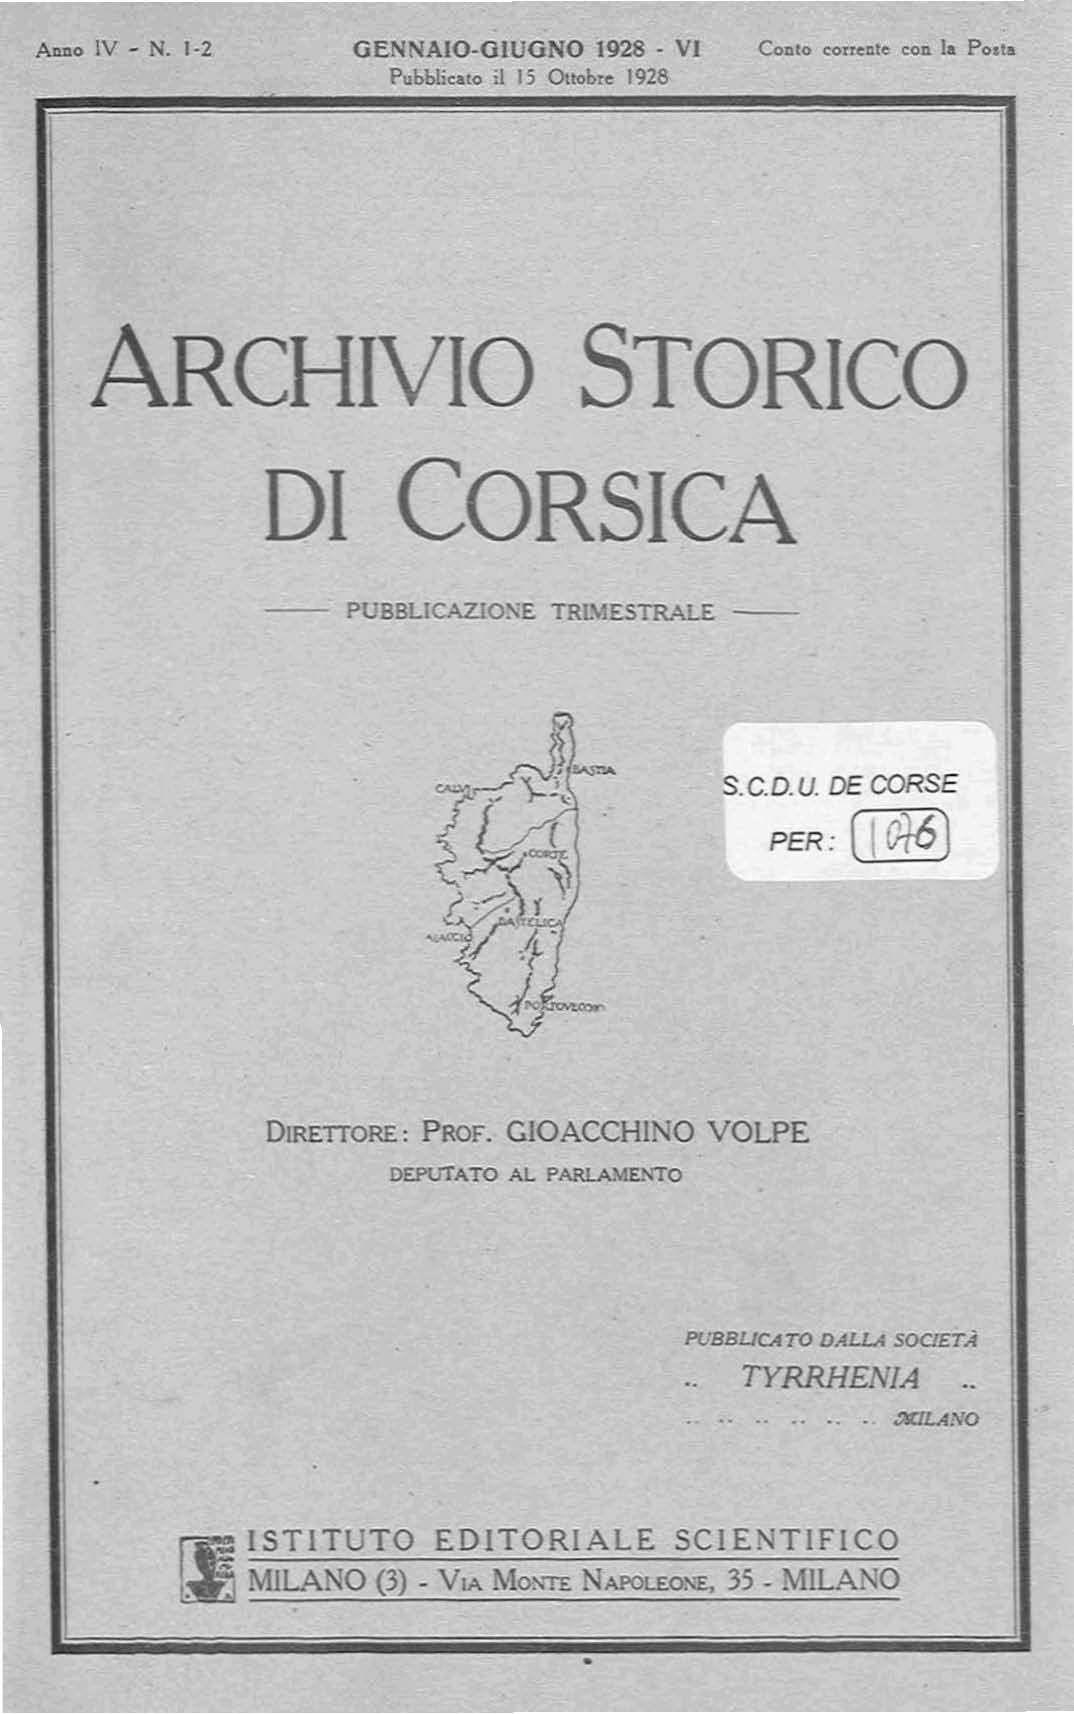 >Archivio Storico di Corsica (1928)